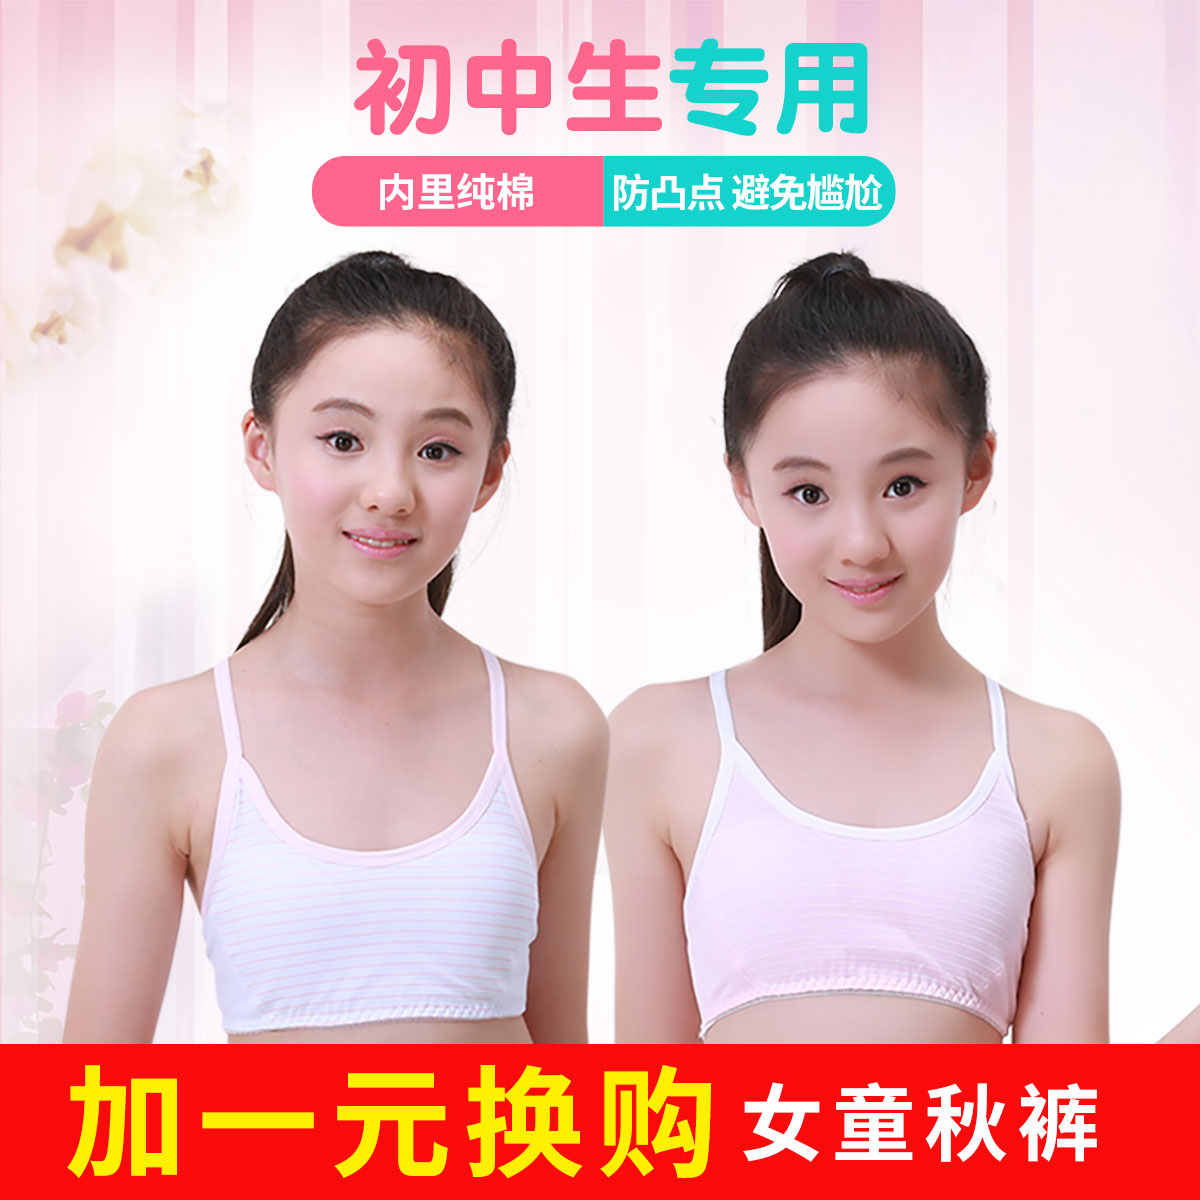 初中文胸发育期无钢圈16岁1网上购物折扣价格与评价  正在发育的女生